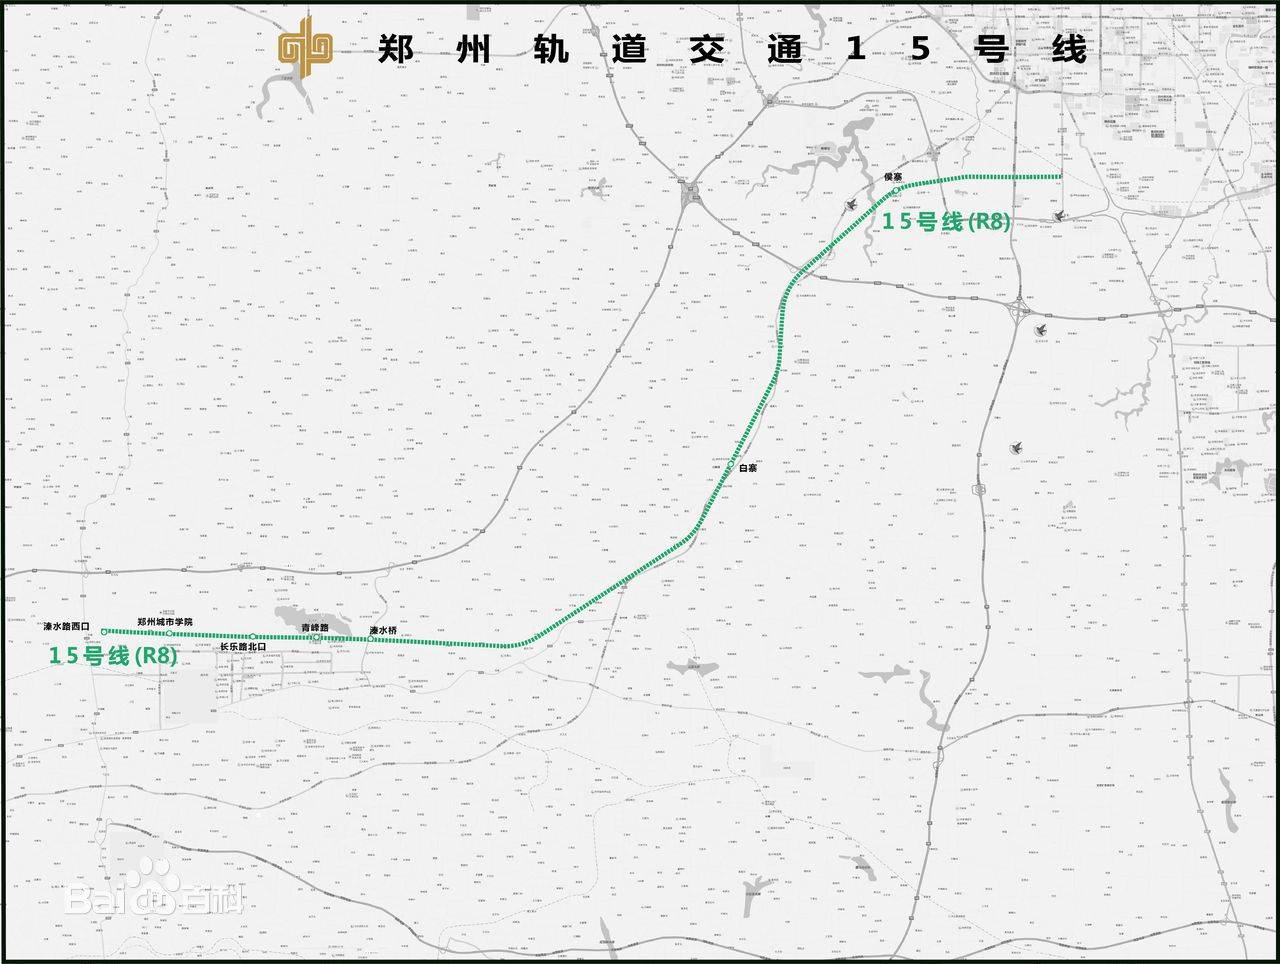  15号线 郑州地铁15号线,起始站点为马寨站,终止站点为新密站,扯度